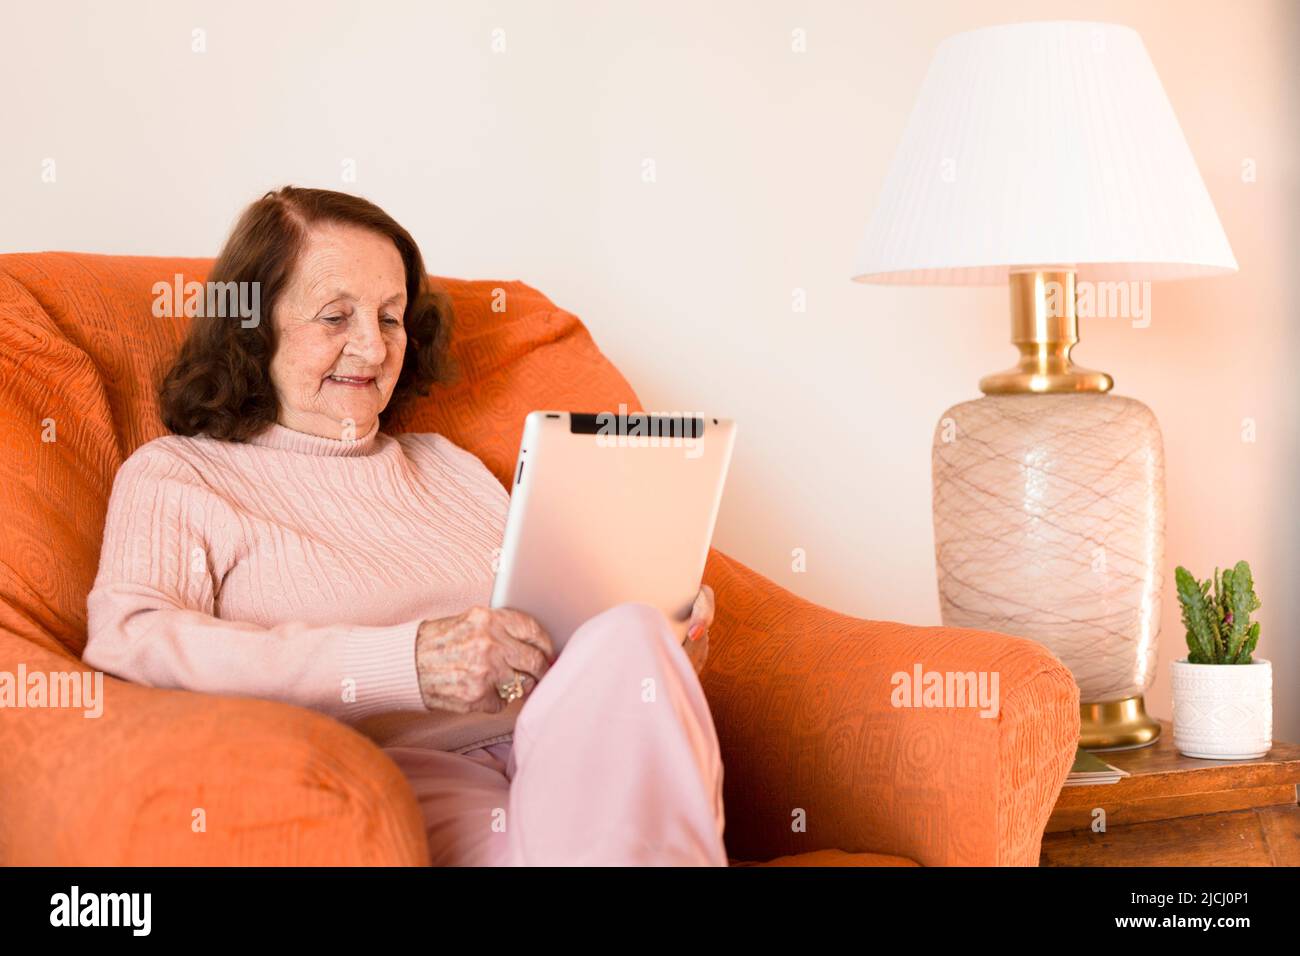 Femme âgée de race blanche utilisant une tablette numérique à la maison. Concept de technologie et personnes âgées. Espace pour le texte. Banque D'Images